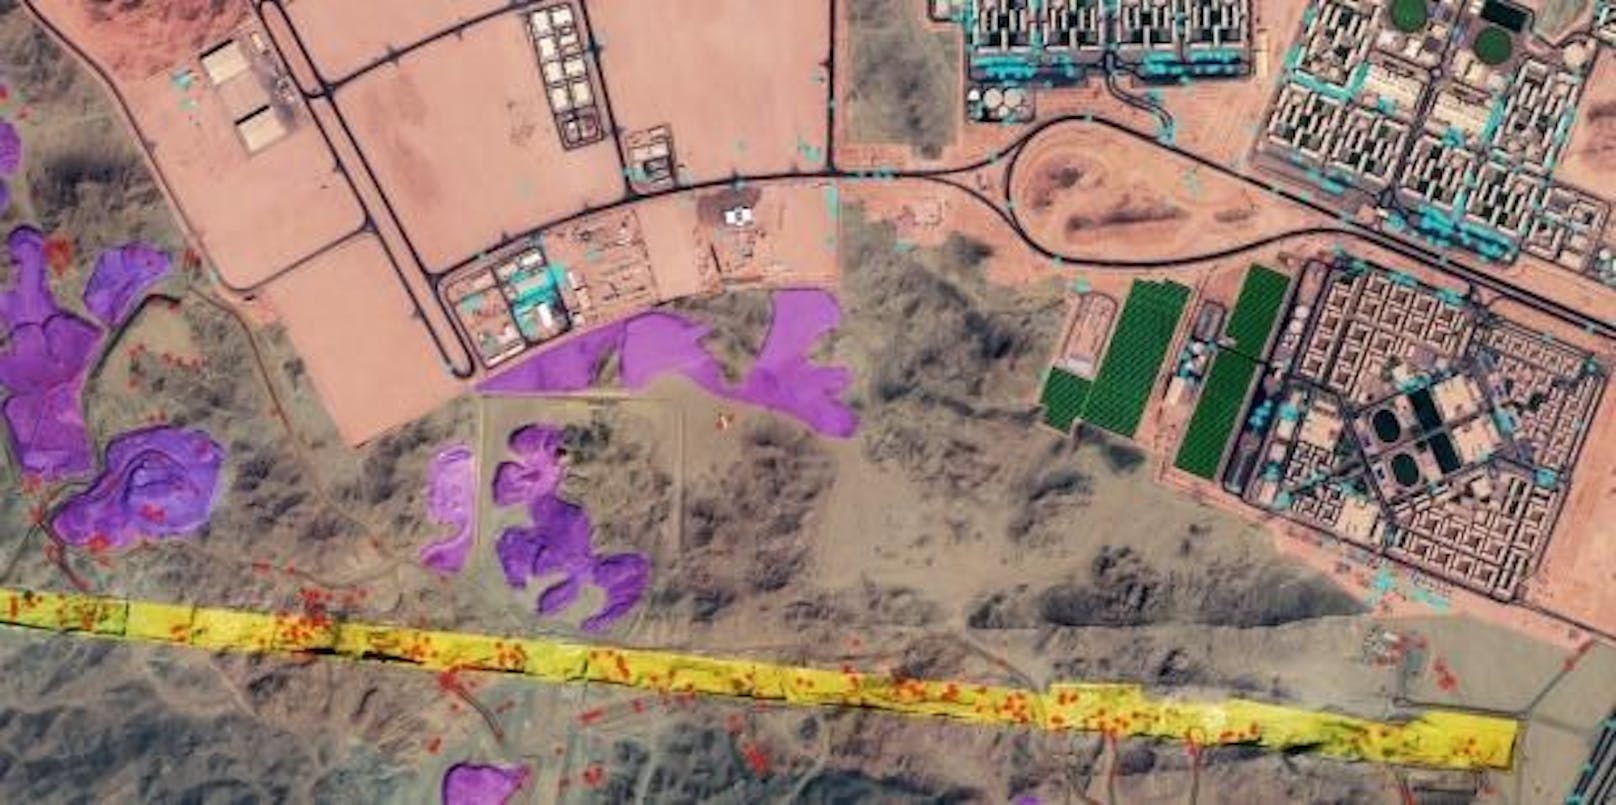 Während die Bilder der Gegend bei Google Maps noch keine Bauarbeiten zeigen, sieht man bei SOAR, einem anderen Dienst, bereits Bauarbeiten: Bagger (die roten Punkte) schaufeln Erde und Gestein (violett) aus der Vertiefung (gelb). Die Bauten rechts im Bild sind eine Siedlung für Angestellte.